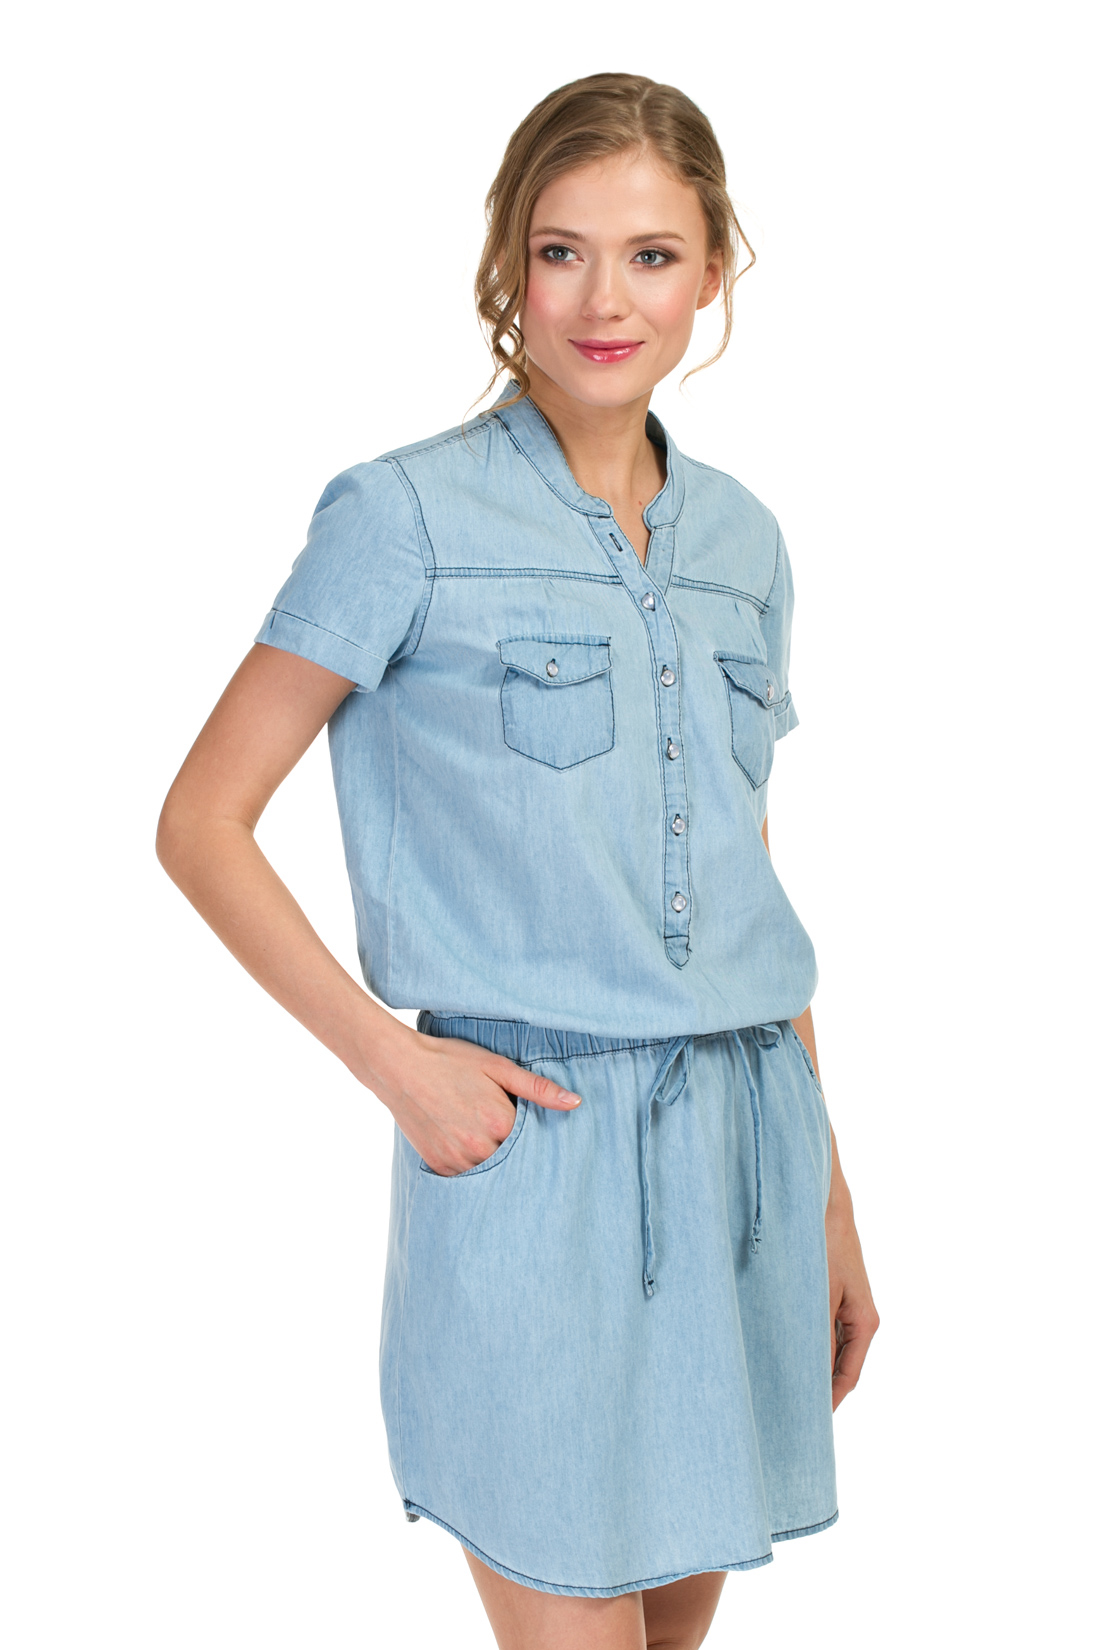 Платье-рубашка из денима (арт. baon B457087), размер XL, цвет light blue denim#голубой Платье-рубашка из денима (арт. baon B457087) - фото 4